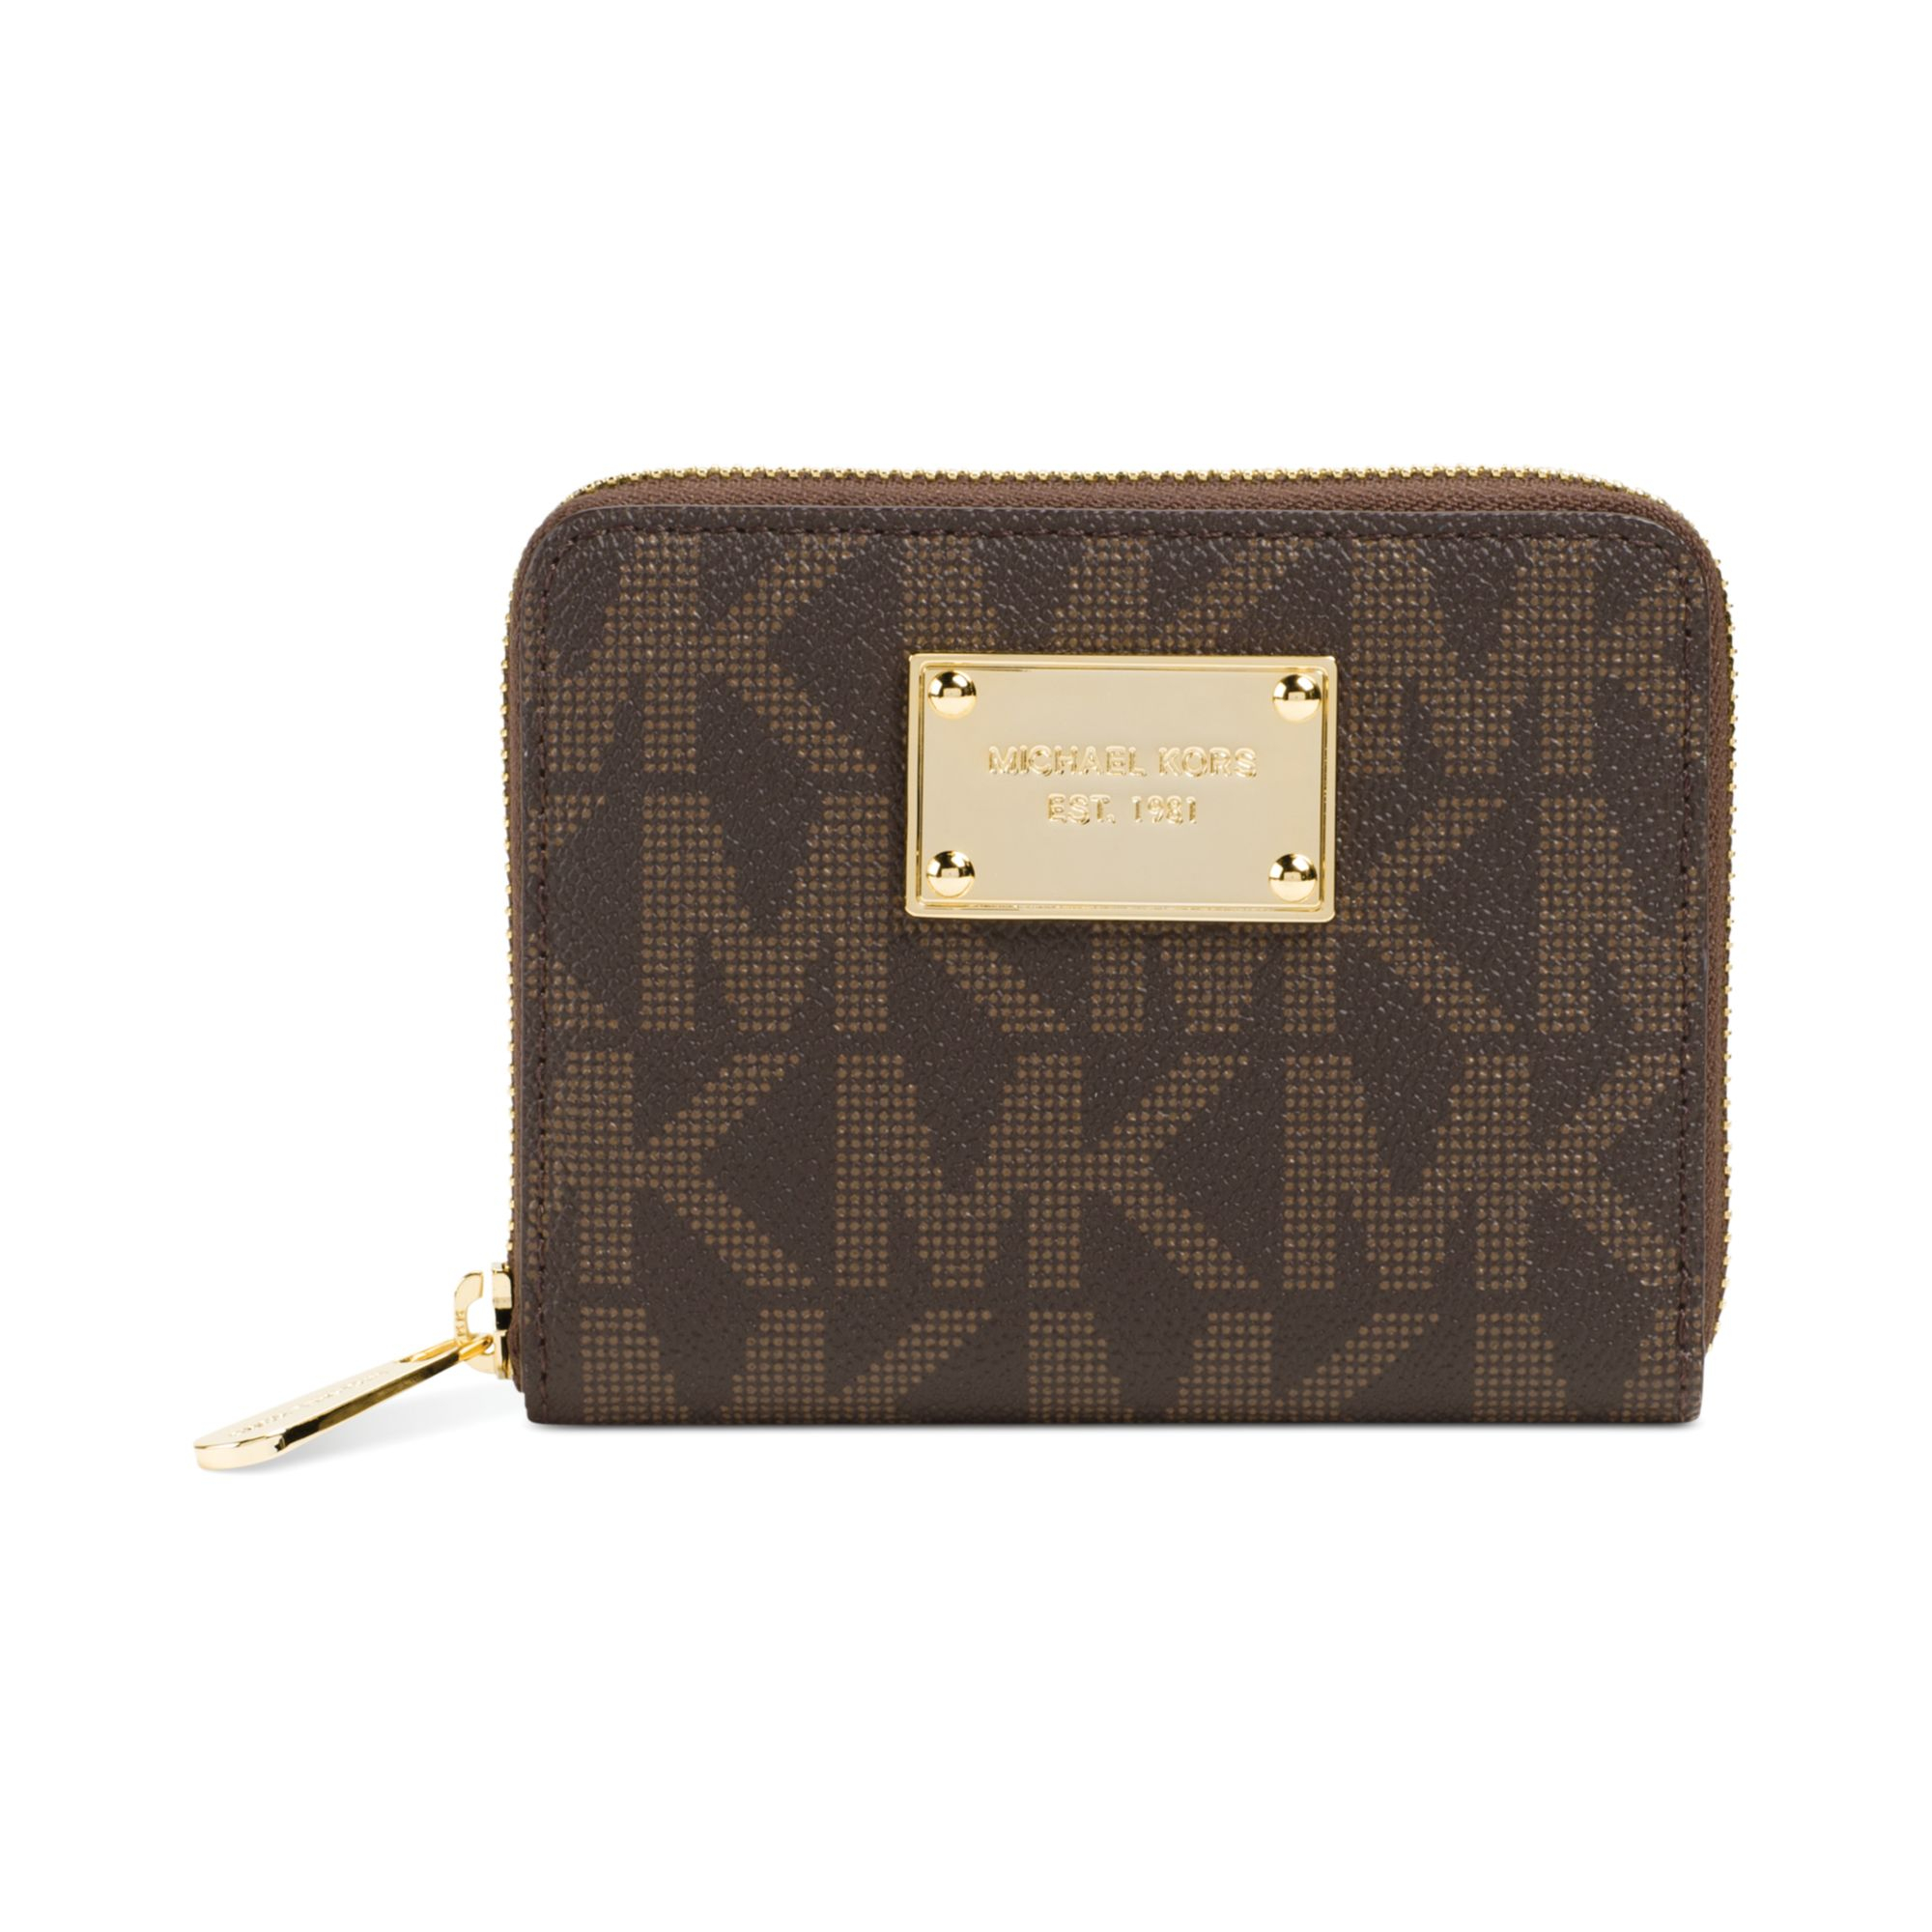 MK zip wallet